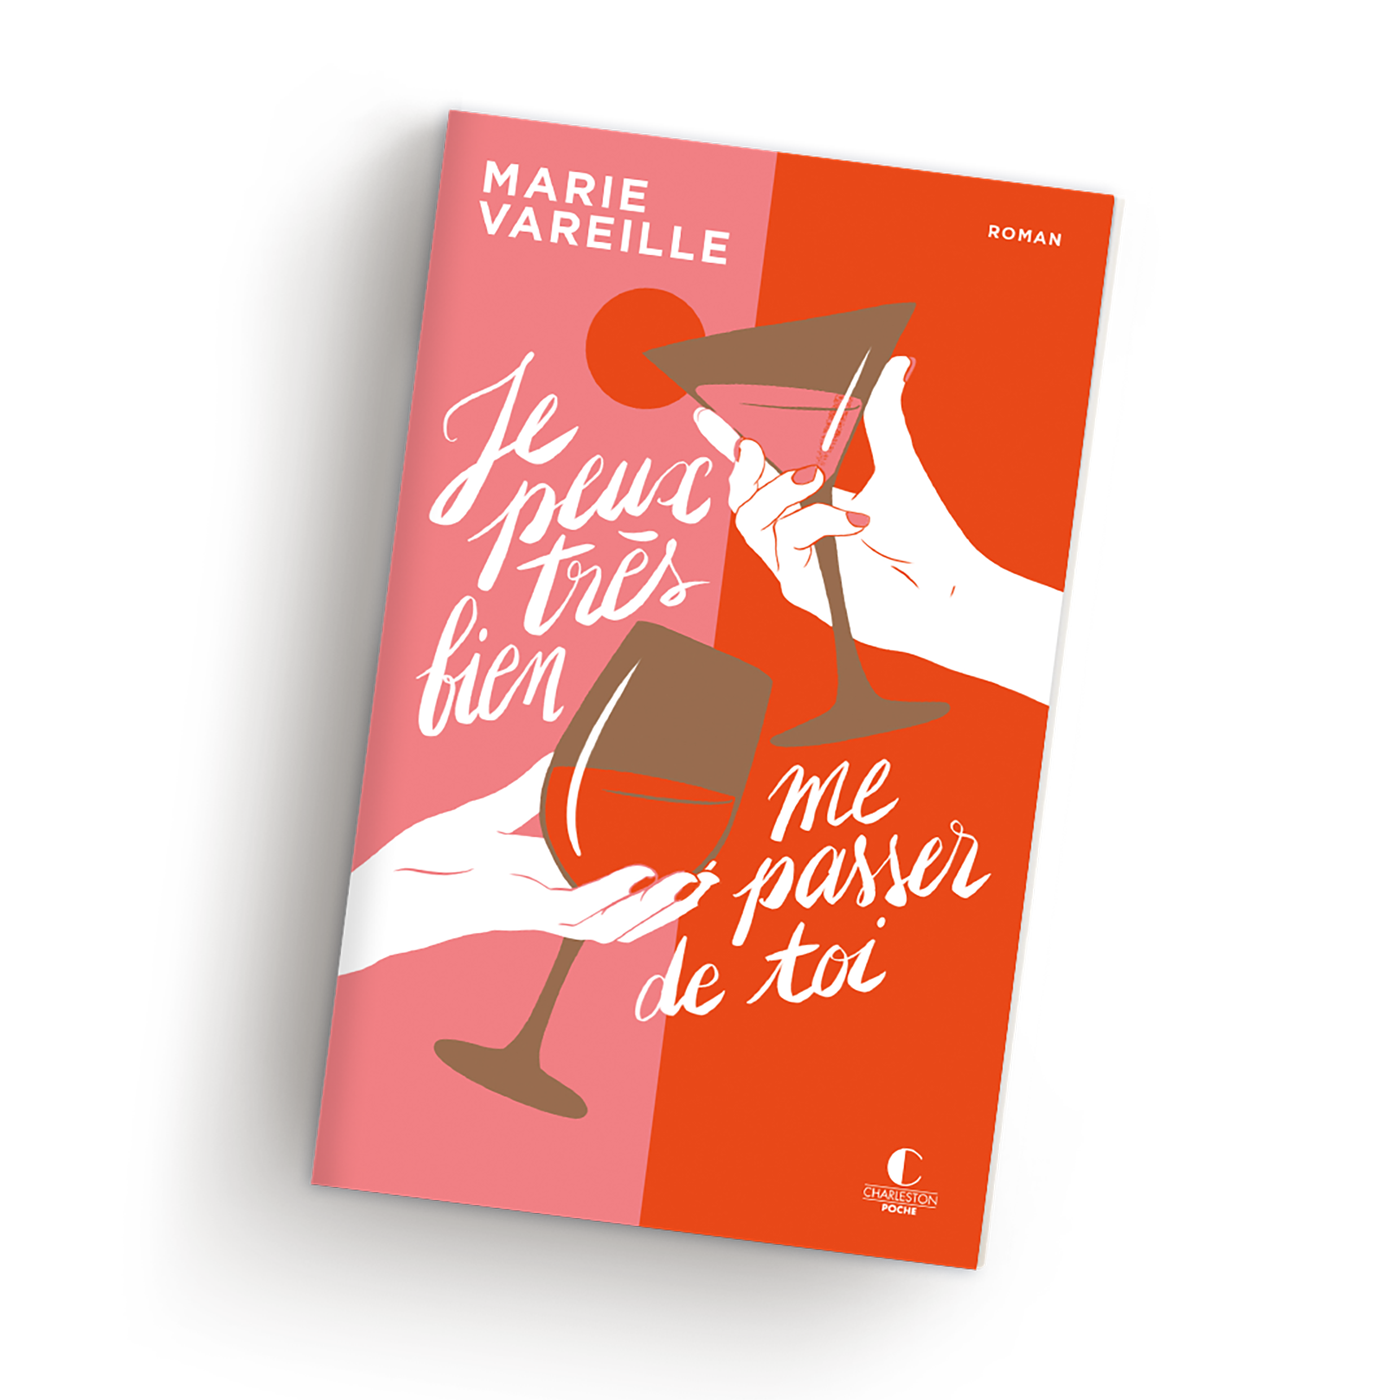 Que lire après La Dernière allumette - Marie Vareille